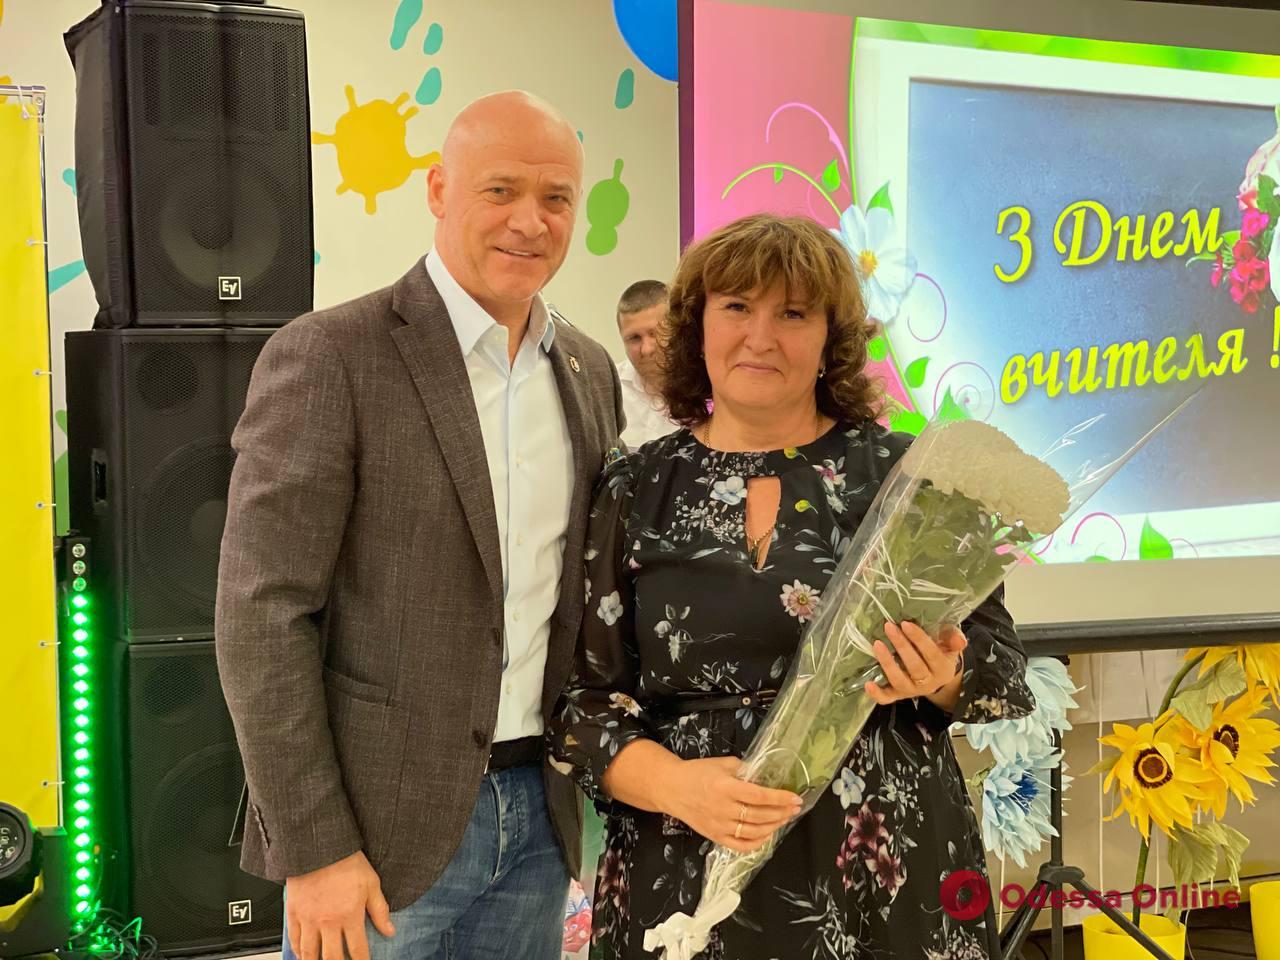 Мер Одеси Геннадій Труханов нагородив одеських педагогів